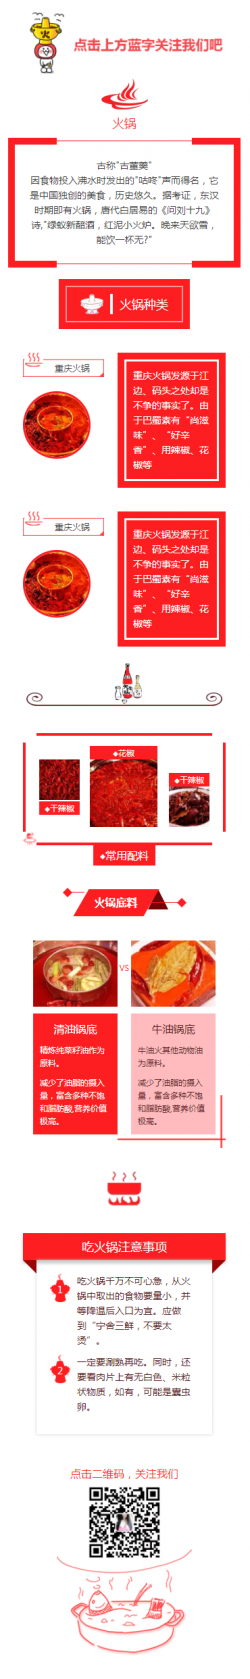 火锅美食红色热烈风格模板